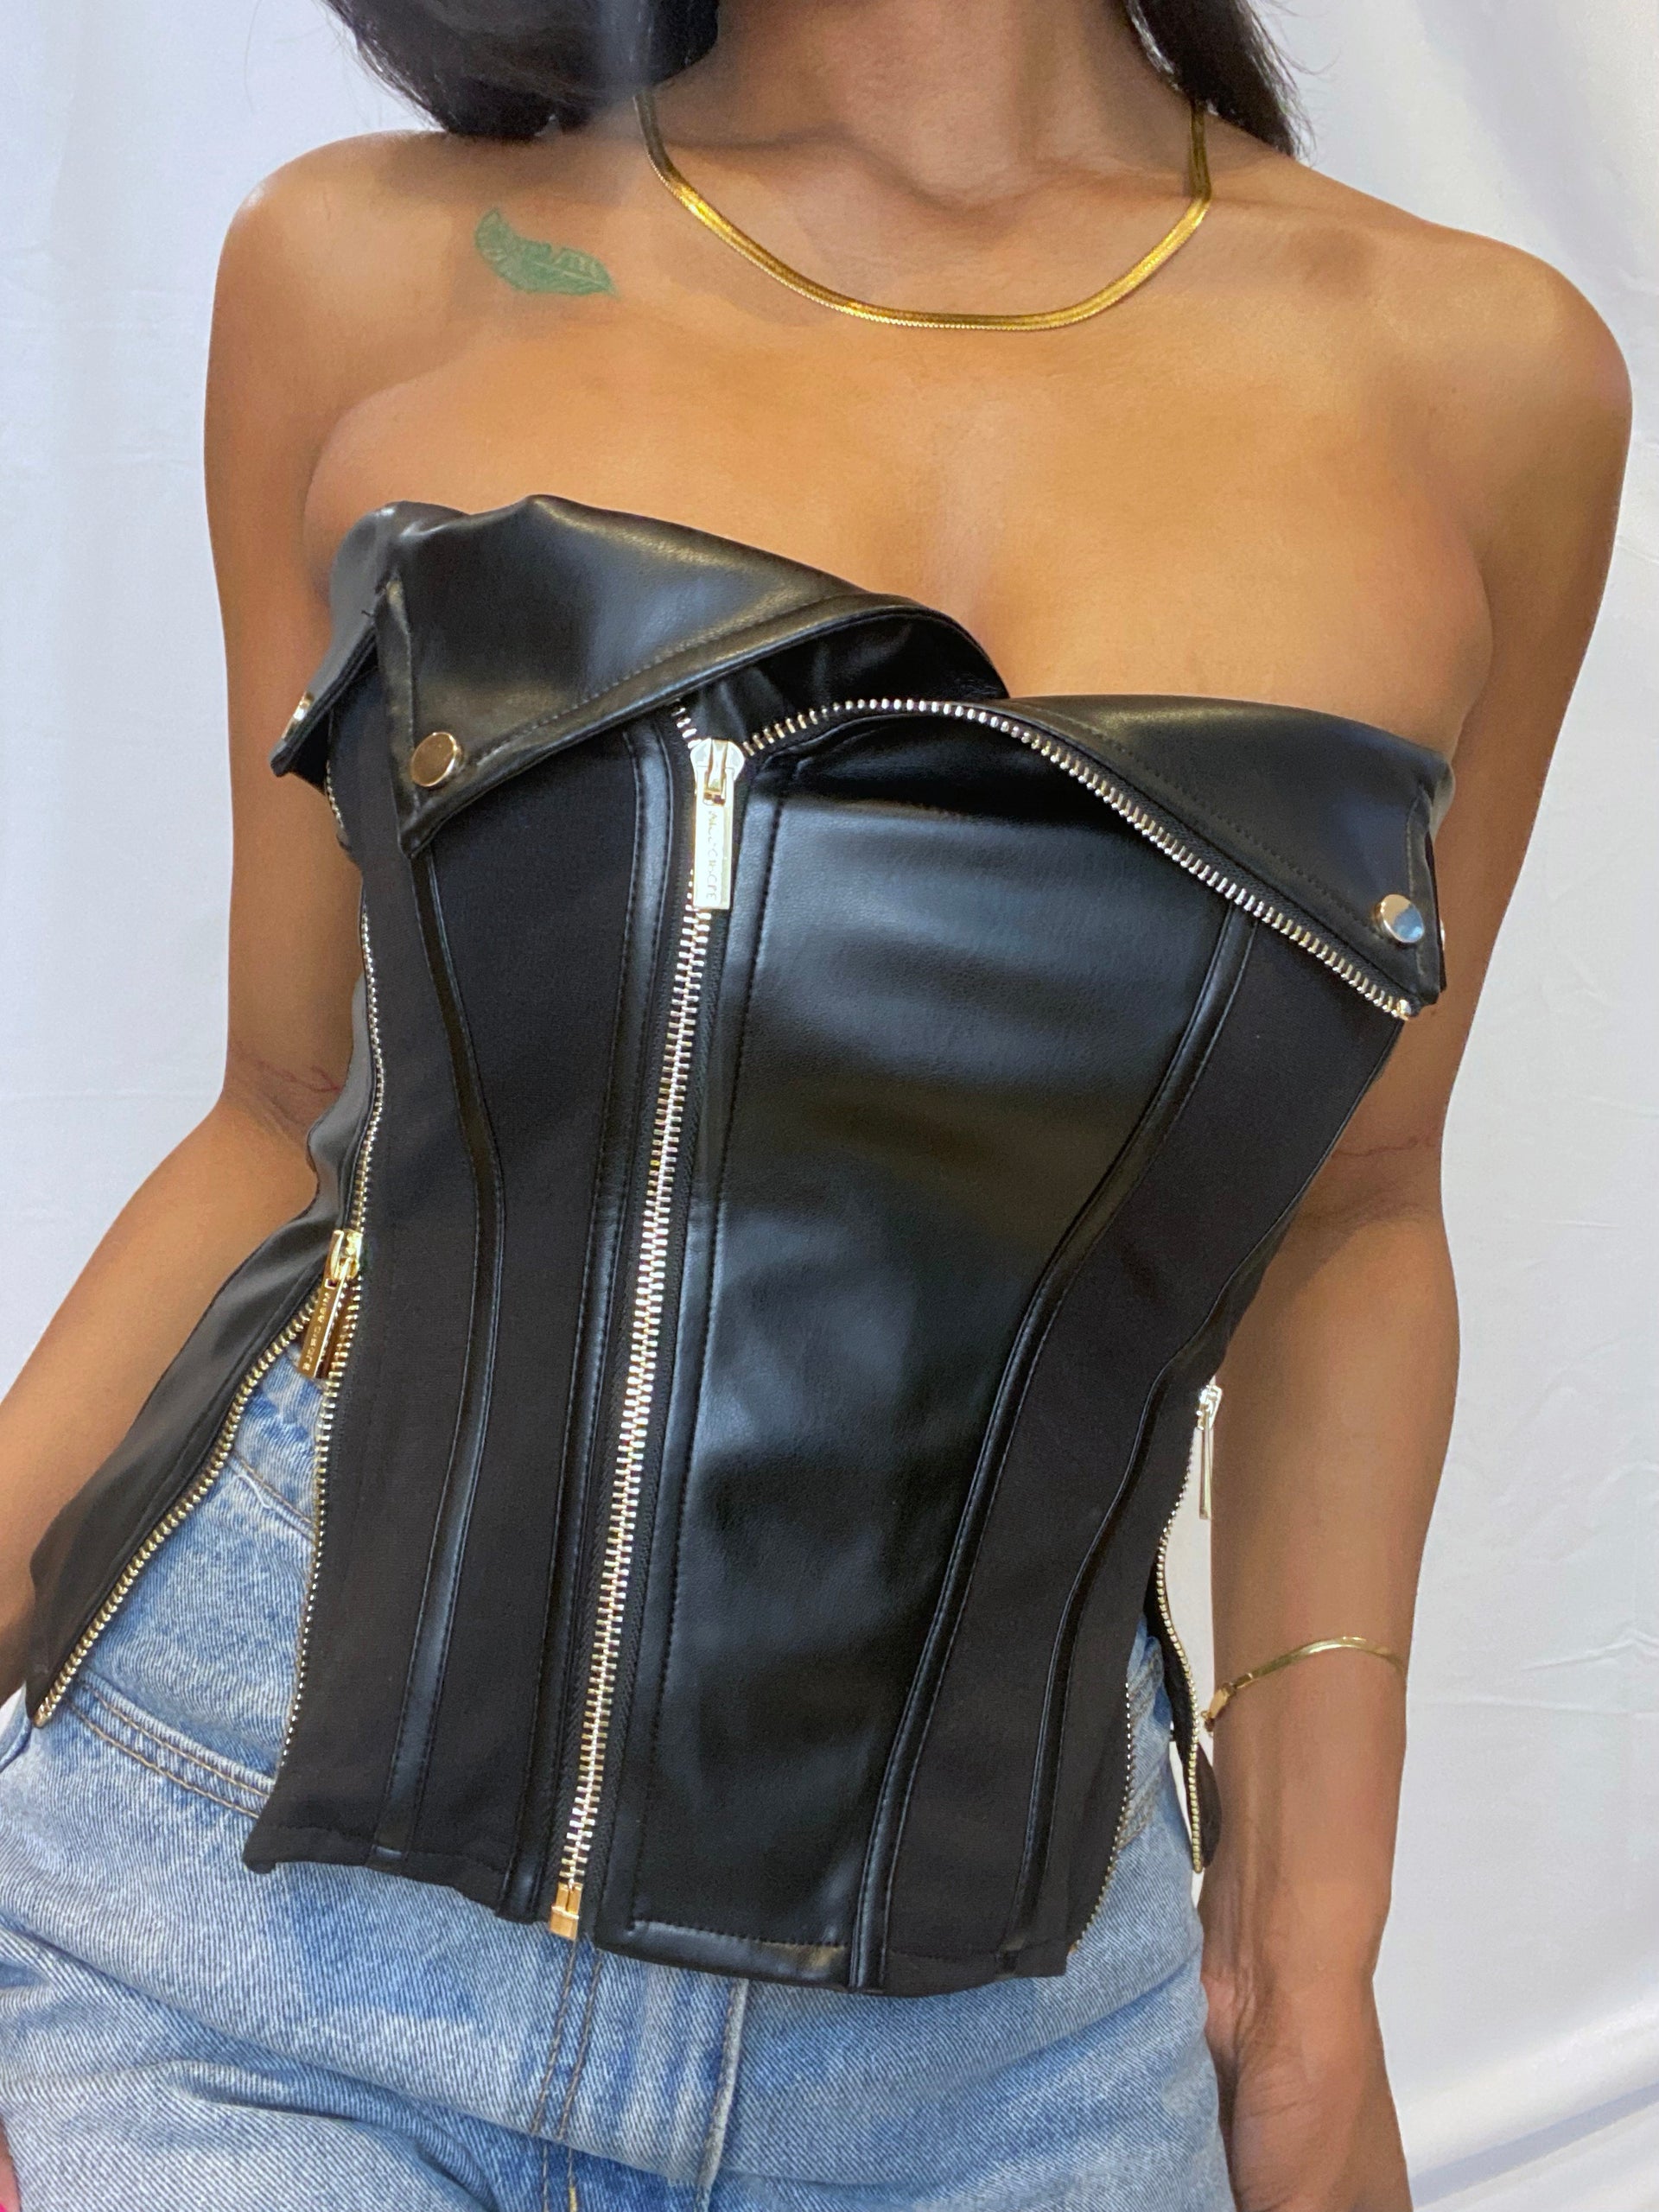 NIA Tina Corset - Black Strapless Top - Vegan Leather Top - Lulus